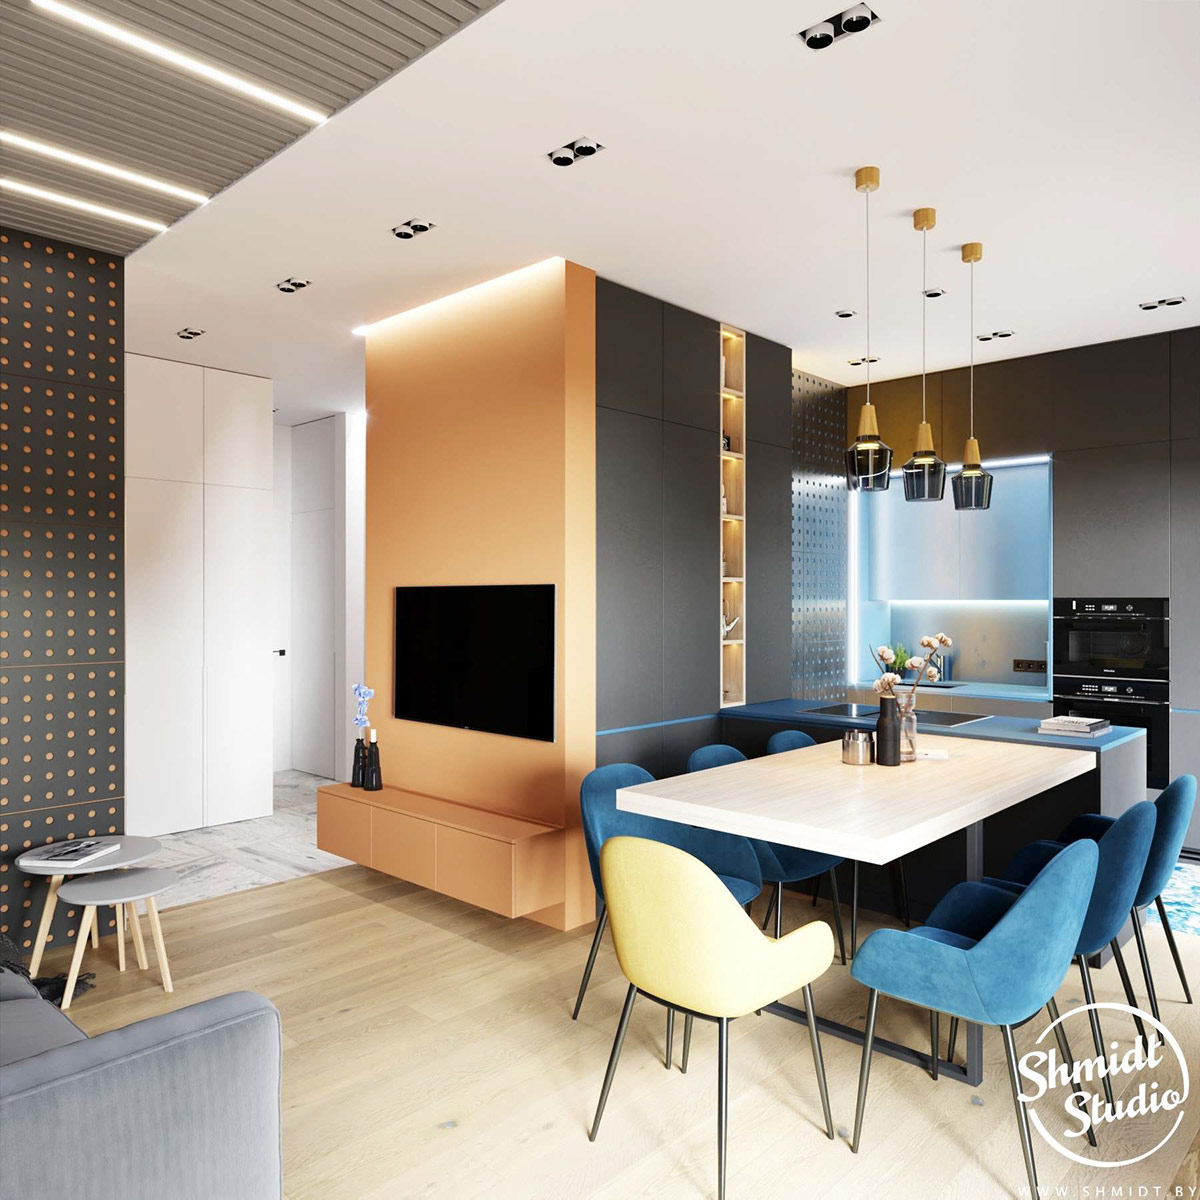 Căn hộ thứ hai cũng sử dụng gam màu cam và xanh lam chủ đạo nhưng màu cam có sắc thái dịu nhẹ hơn so với căn hộ được giới thiệu đầu tiên. Vì diện tích khá “khiêm tốn” nên các nhà thiết kế đã lựa chọn thiết kế mở cho khu vực sinh hoạt chung, bao gồm phòng khách, bếp và khu vực ăn uống.